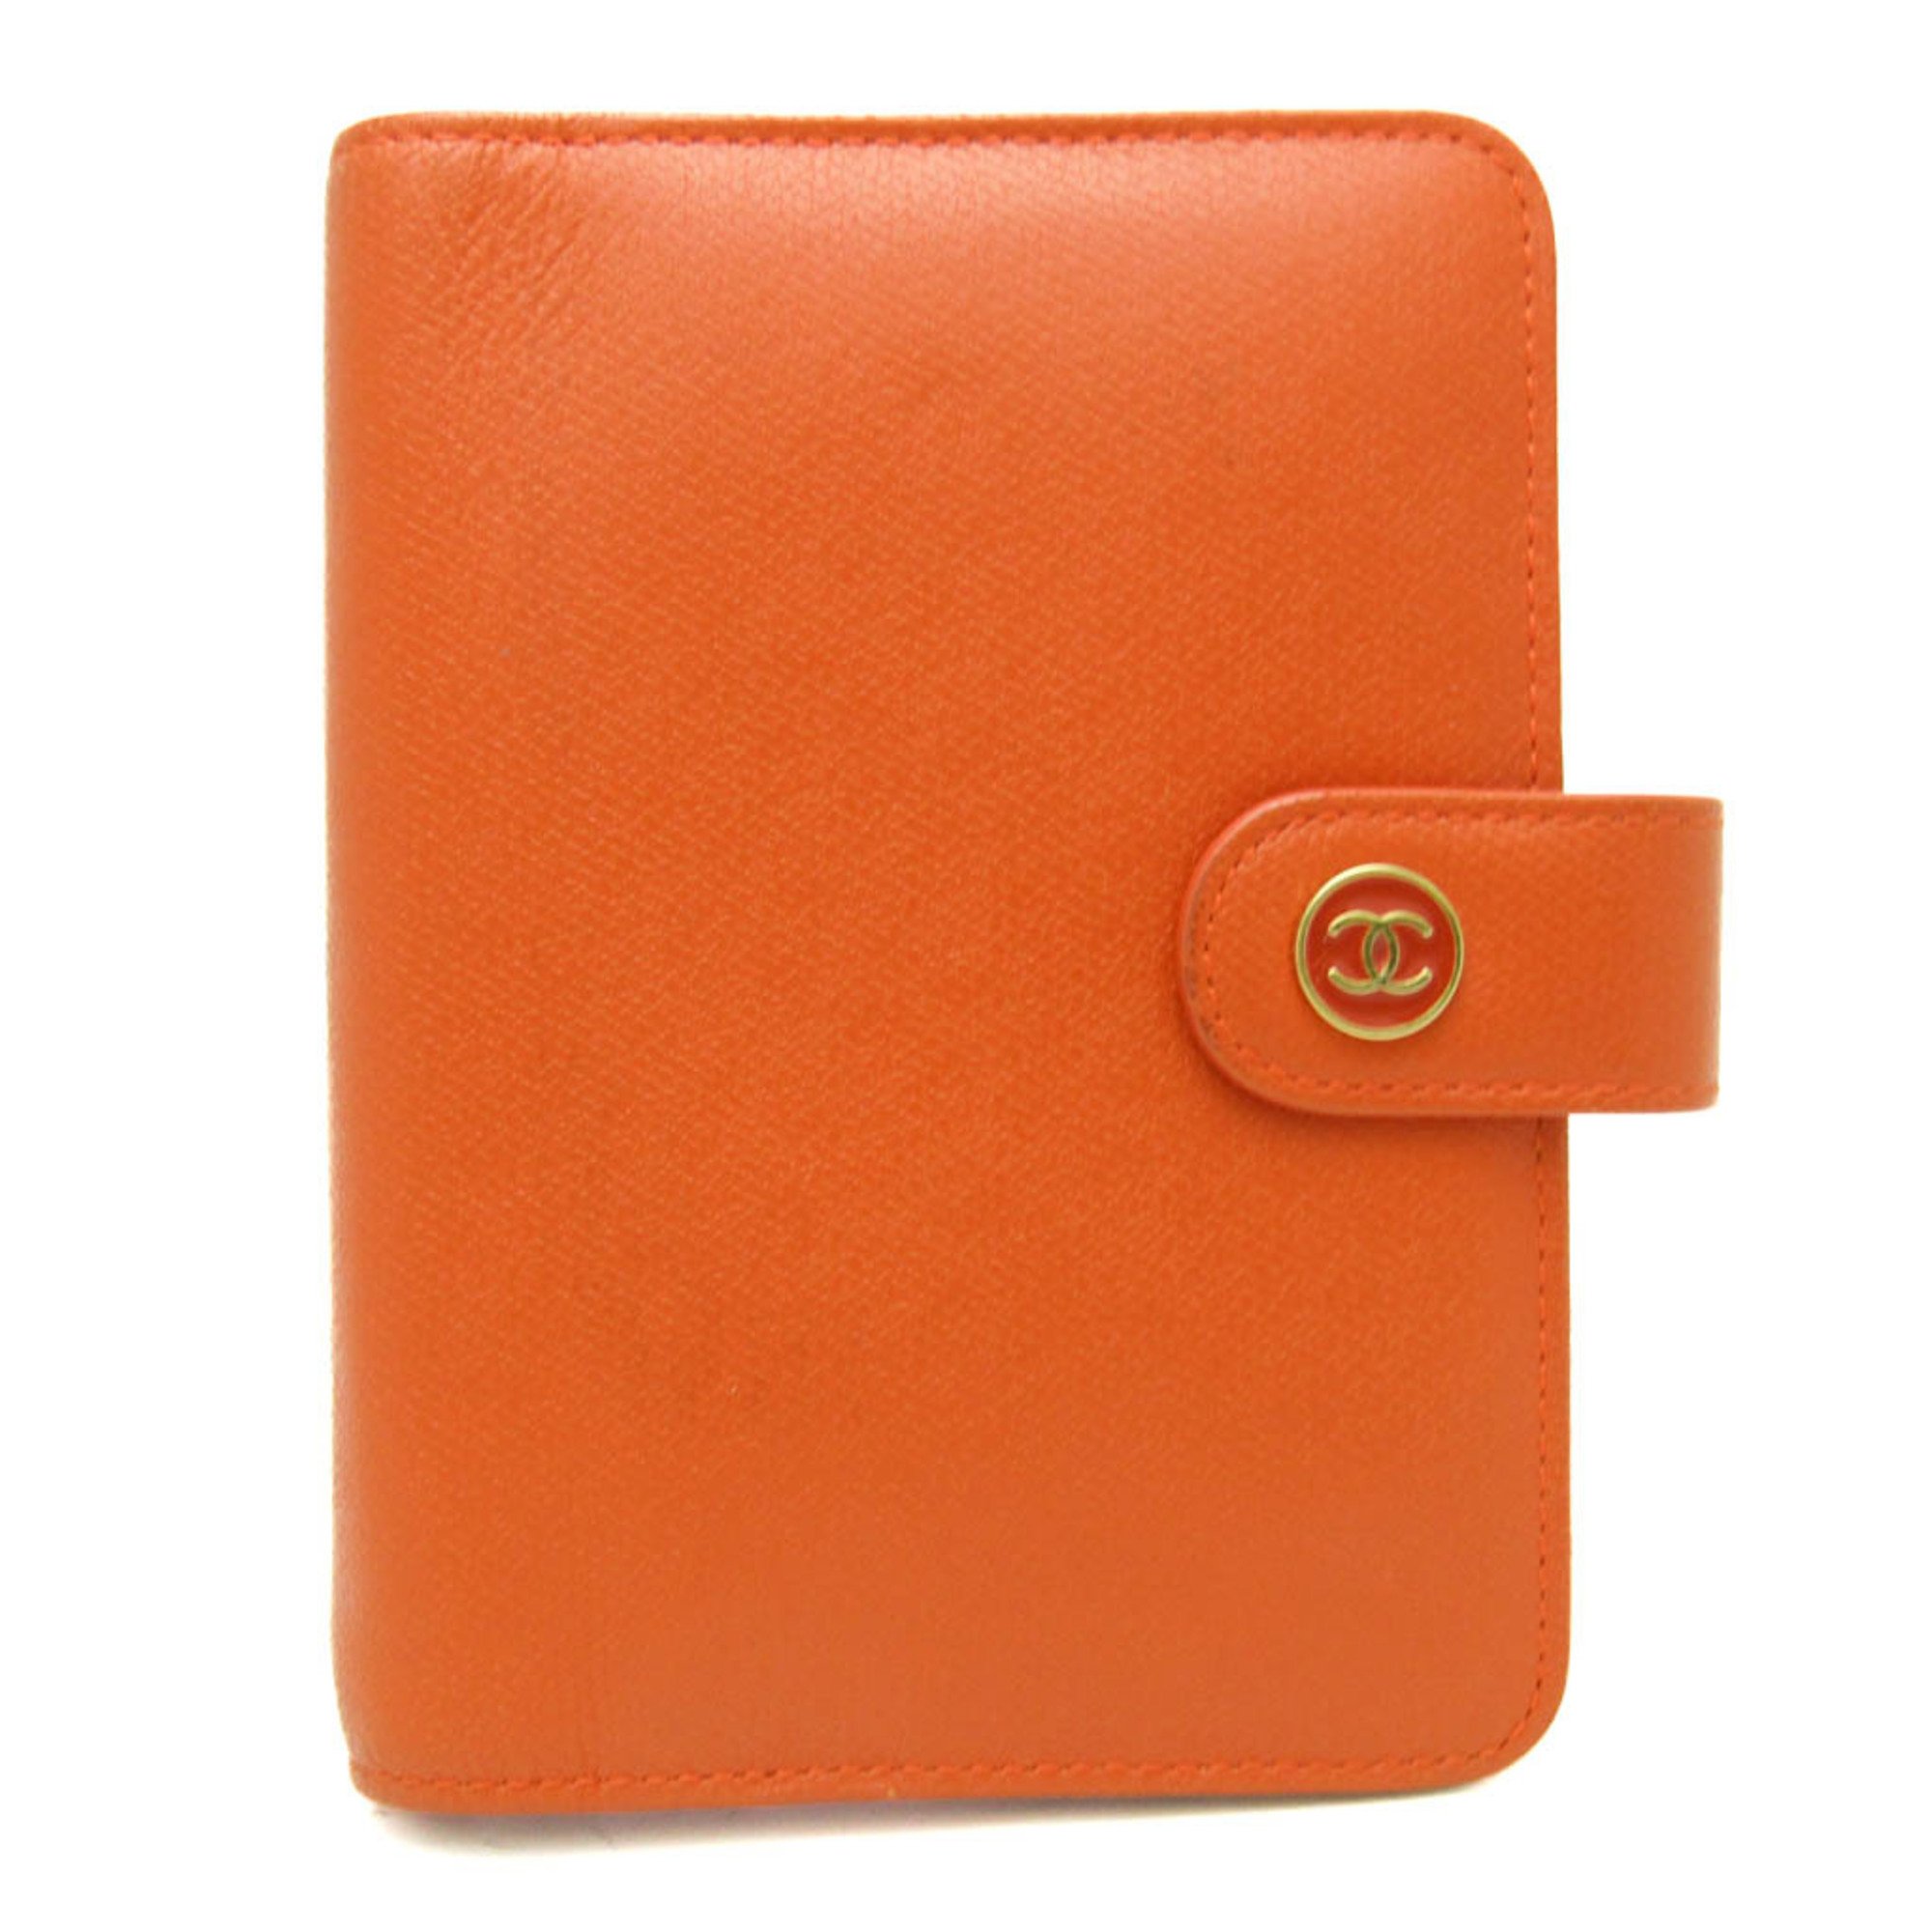 シャネル(Chanel) A6 手帳 オレンジ ココボタン A23850